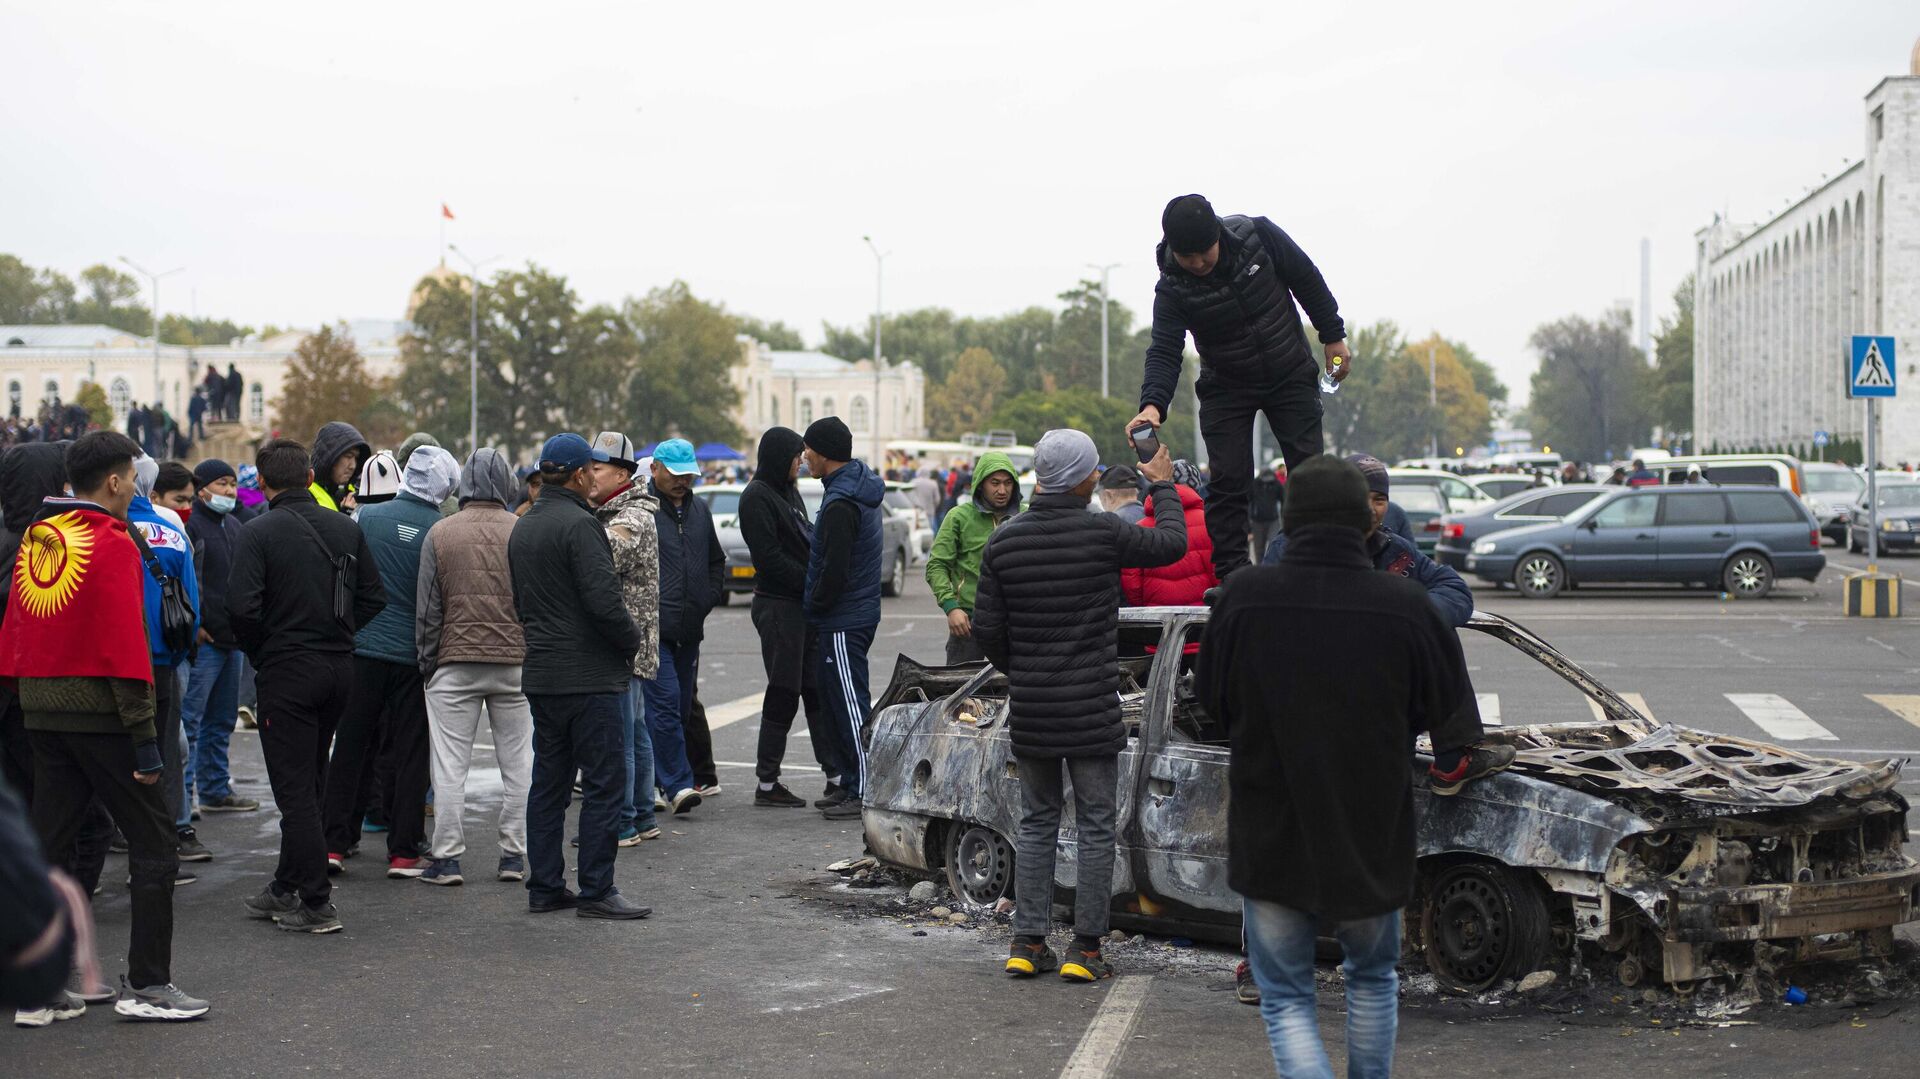 Протестующие у сожженного автомобиля на центральной площади Бишкека Ала-Тоо - РИА Новости, 1920, 06.10.2020